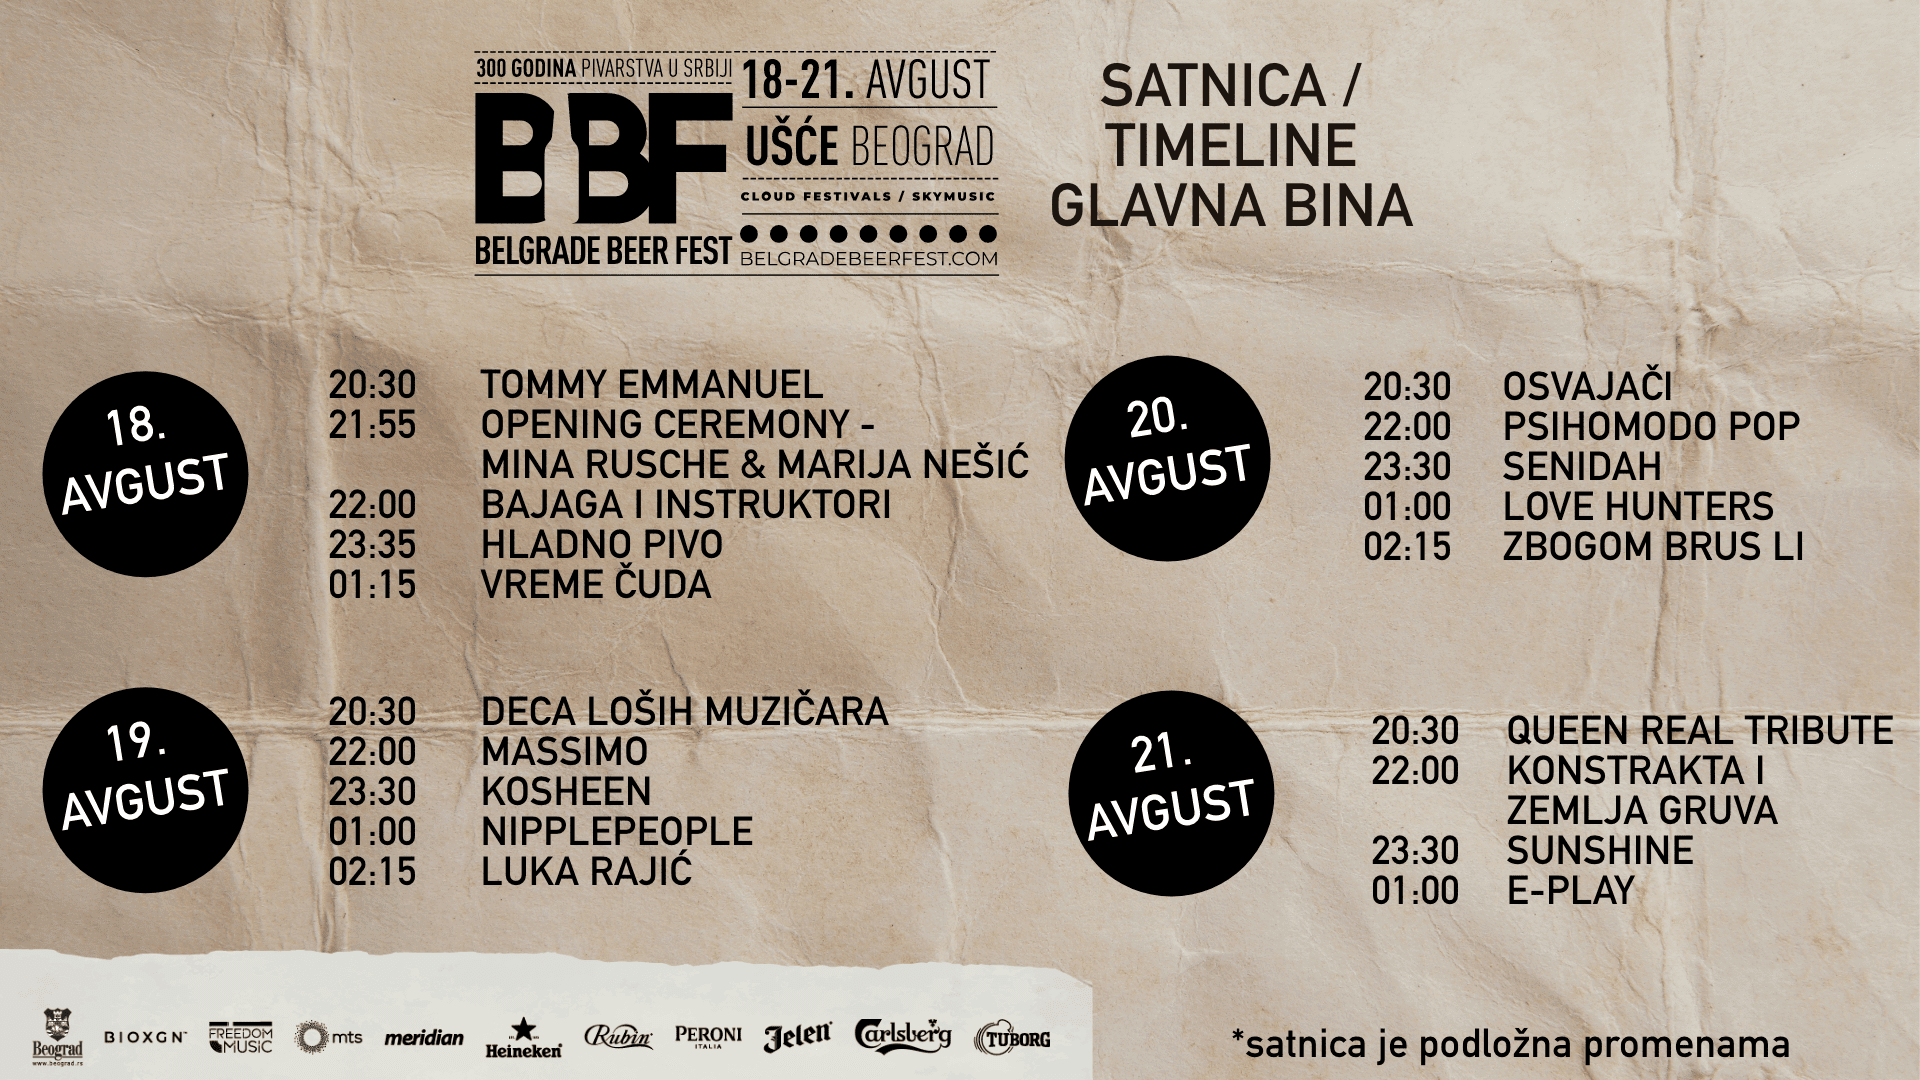 Belgrade Beer Fest 2022